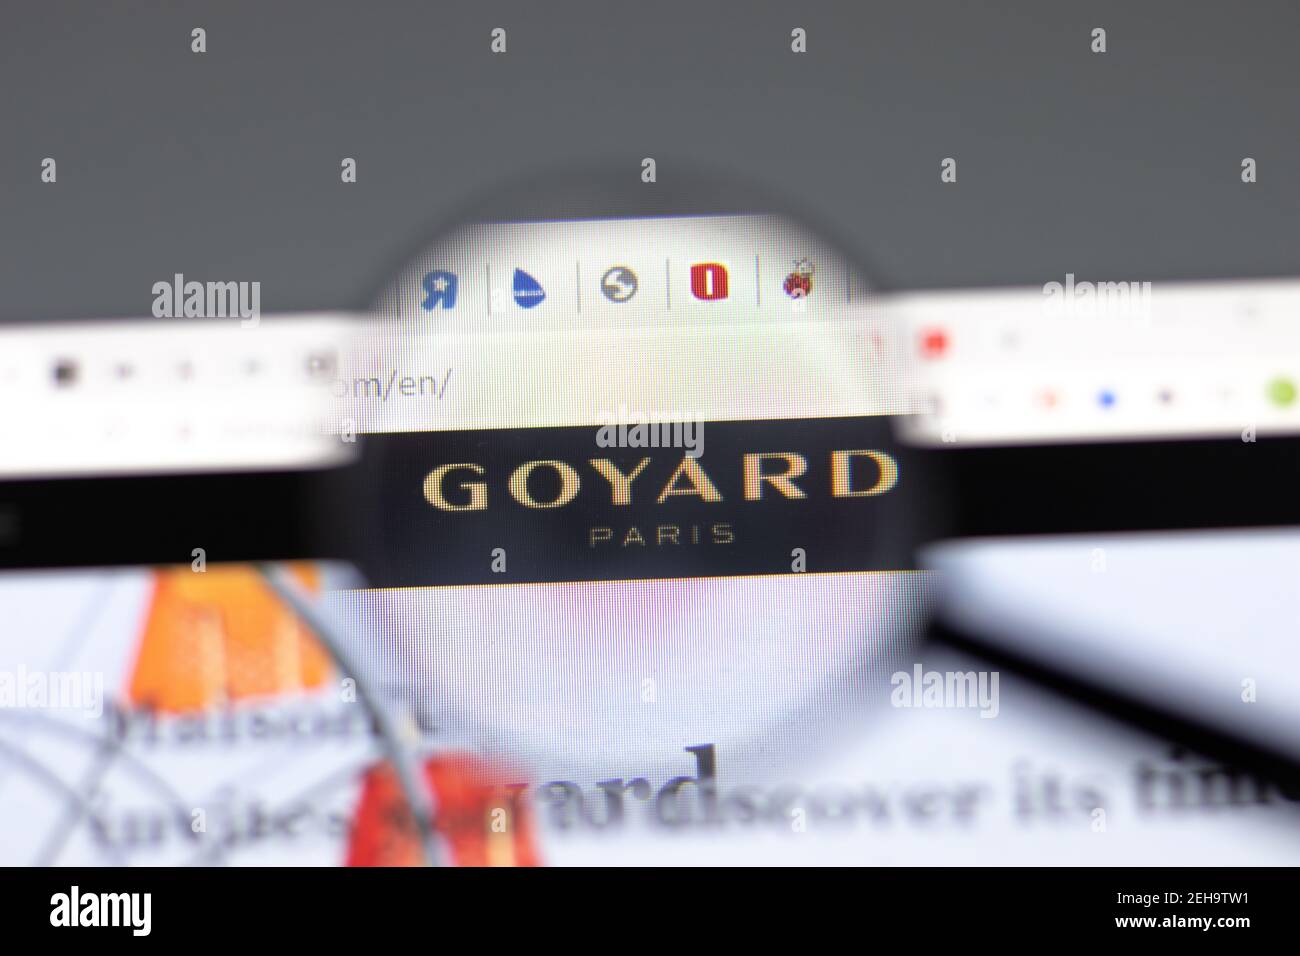 Nueva York, EE.UU. - 15 de febrero de 2021: Sitio web de Goyard en el navegador con el logotipo de la empresa, editorial ilustrativa Foto de stock